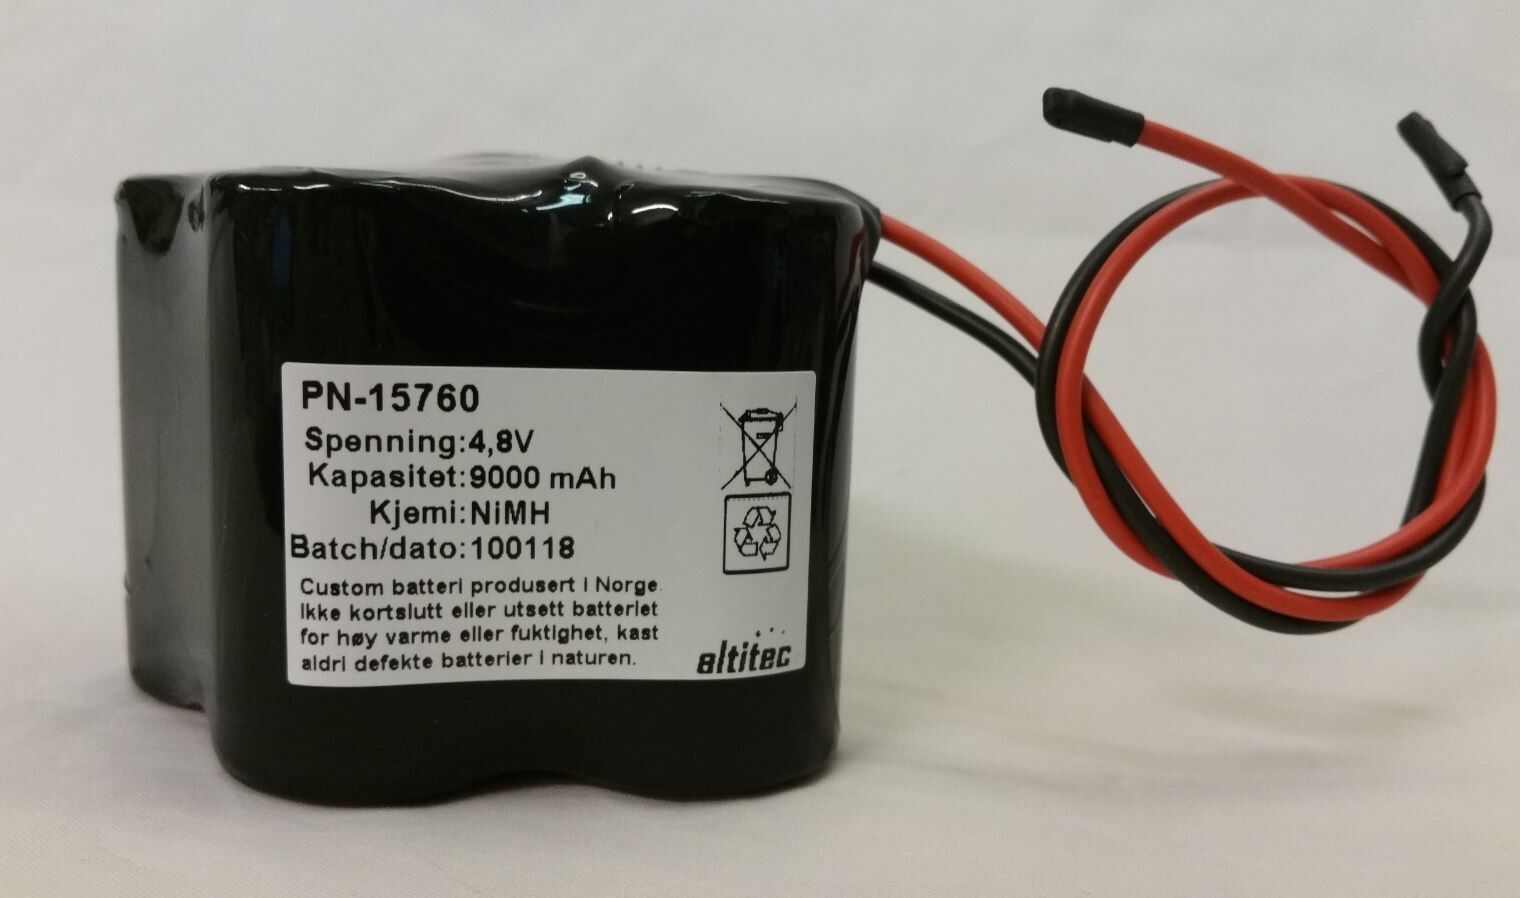 Altitec 4,8V 9000mAh batteripakke med ledning.